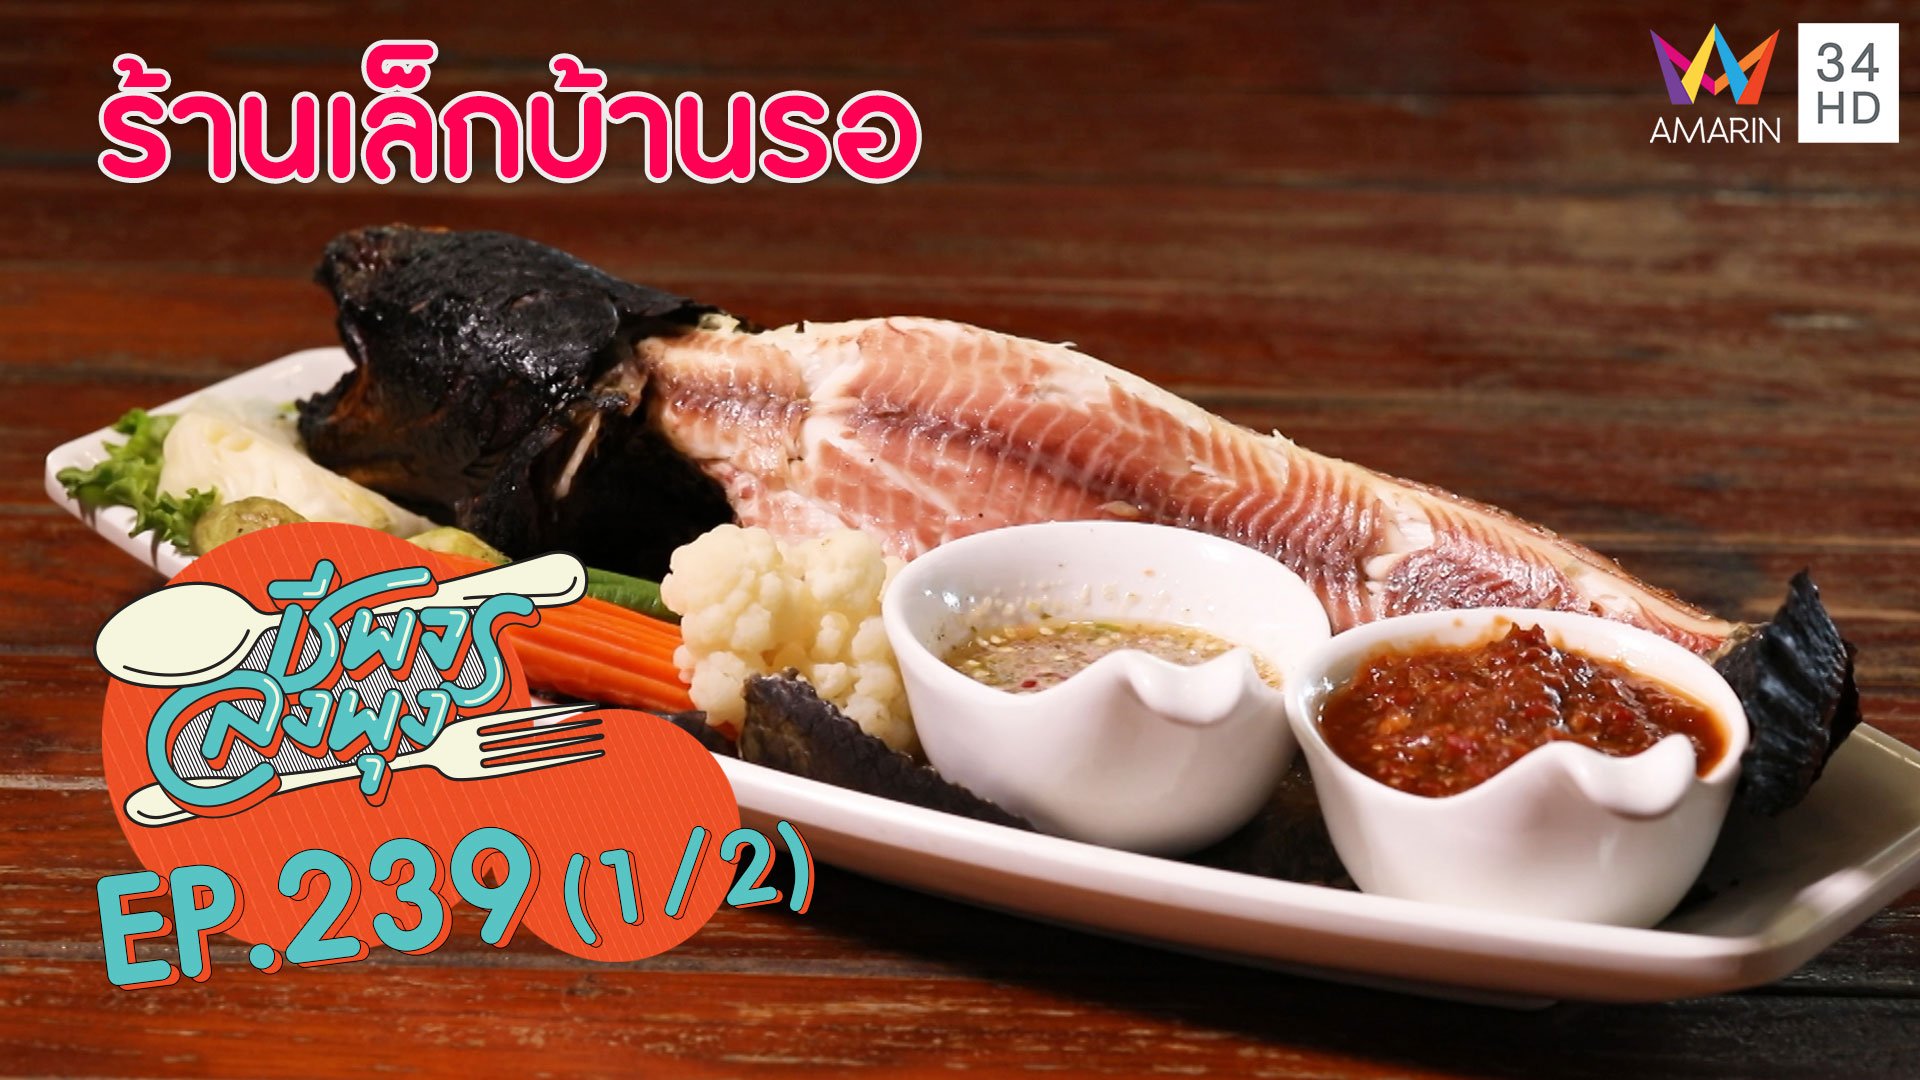 อร่อยเด็ด! ปลาแม่น้ำ @"ร้านเล็กบ้านรอ"  | ชีพจรลงพุง | 20 ก.ย. 63 (1/2) | AMARIN TVHD34